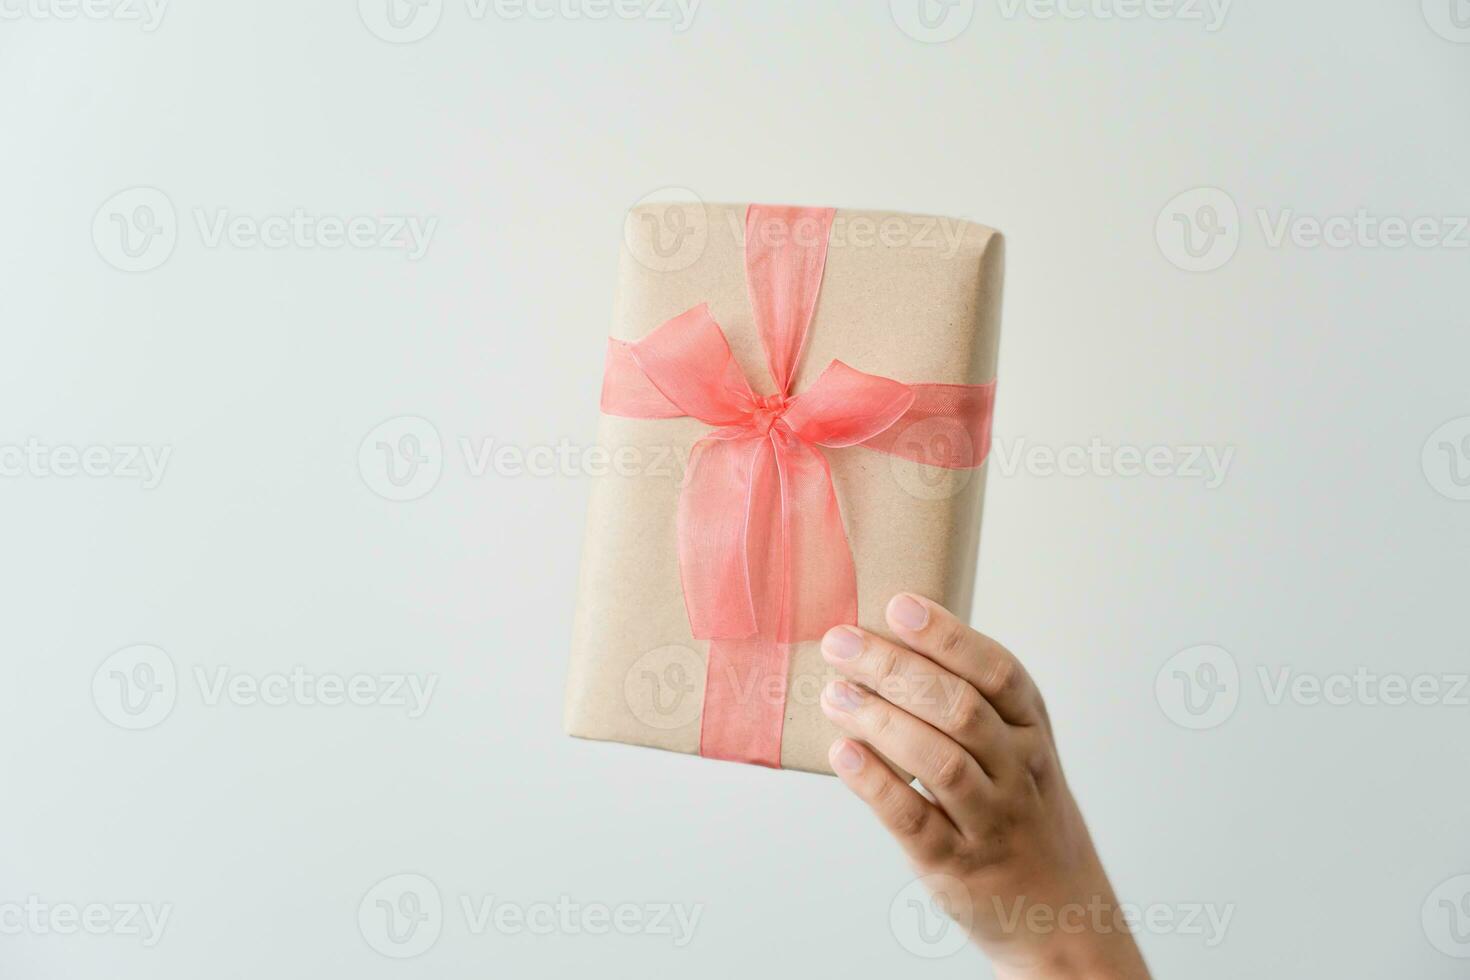 vrouw draag- geschenk papier doos stropdas schattig lint voor speciaal gelegenheid. levering Bezig met verzenden Cadeau naar iemand speciaal naar dank of verrassing. foto